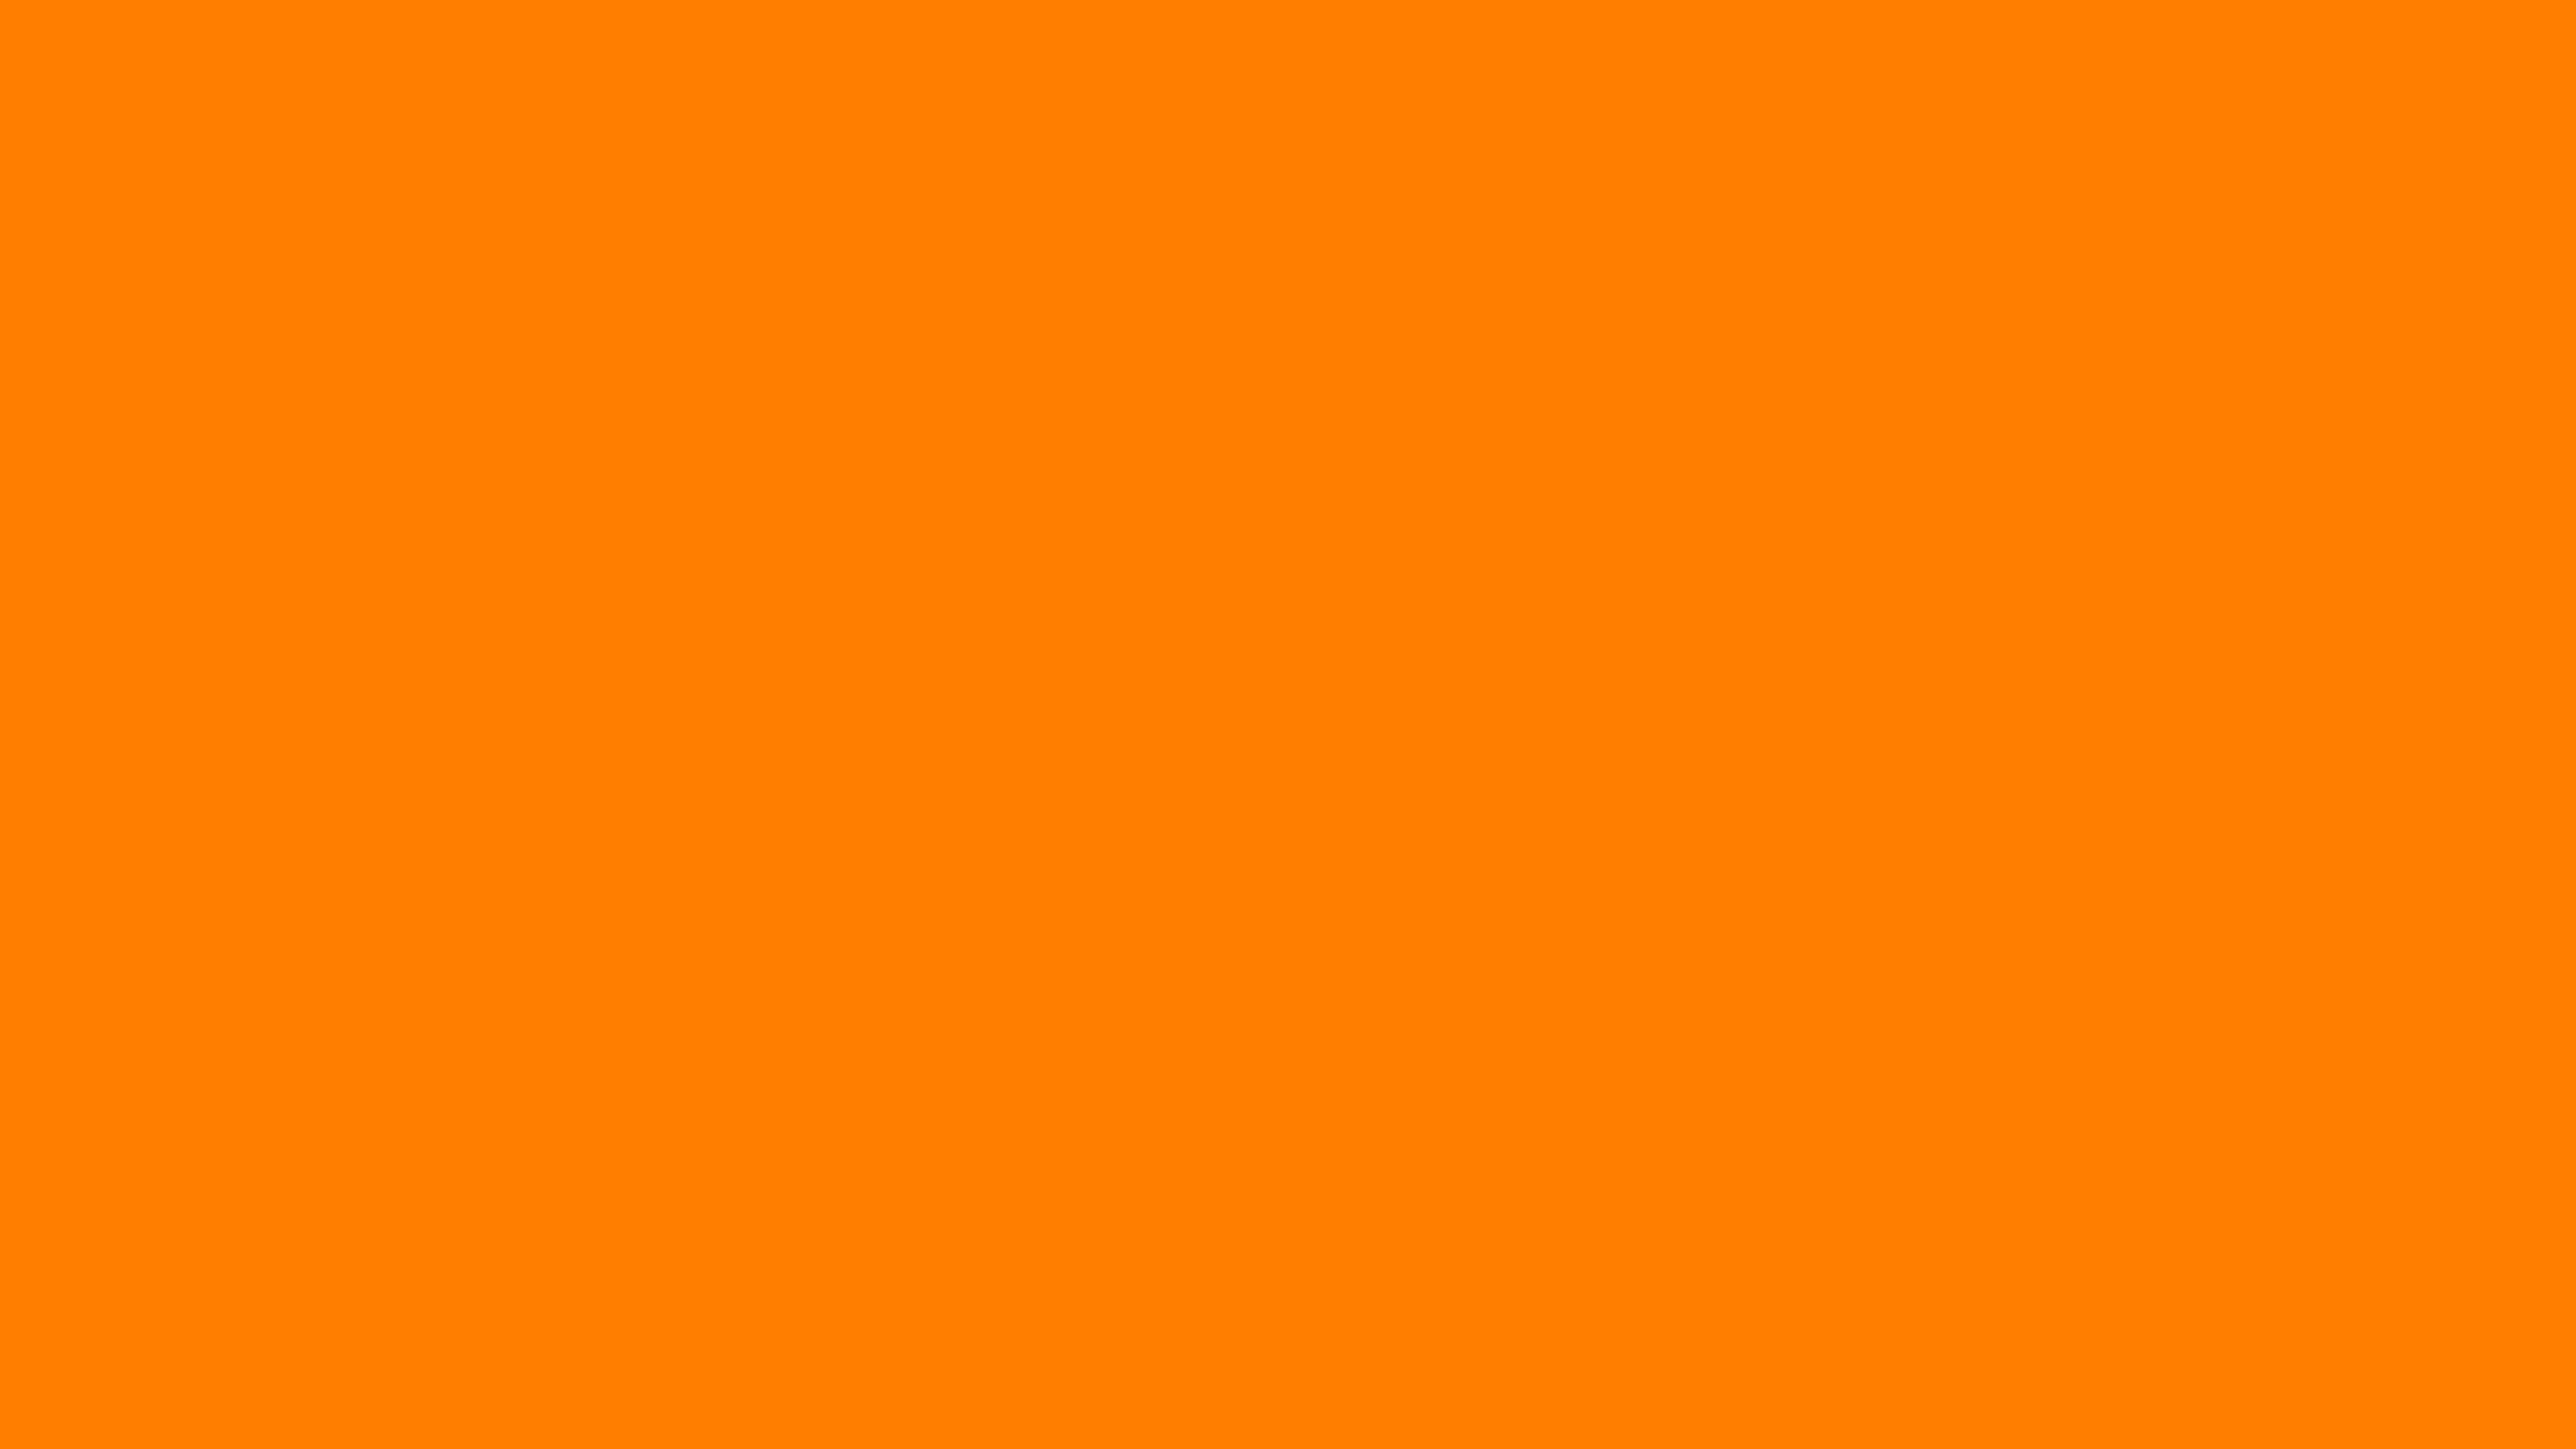 Nền màu cam đơn sắc: Màu cam đơn sắc là màu sắc quyến rũ và bắt mắt. Nếu bạn muốn tìm kiếm một nền đơn sắc để tạo ra những bức ảnh đẹp, thì nền màu cam đơn sắc sẽ là sự lựa chọn hoàn hảo cho bạn.